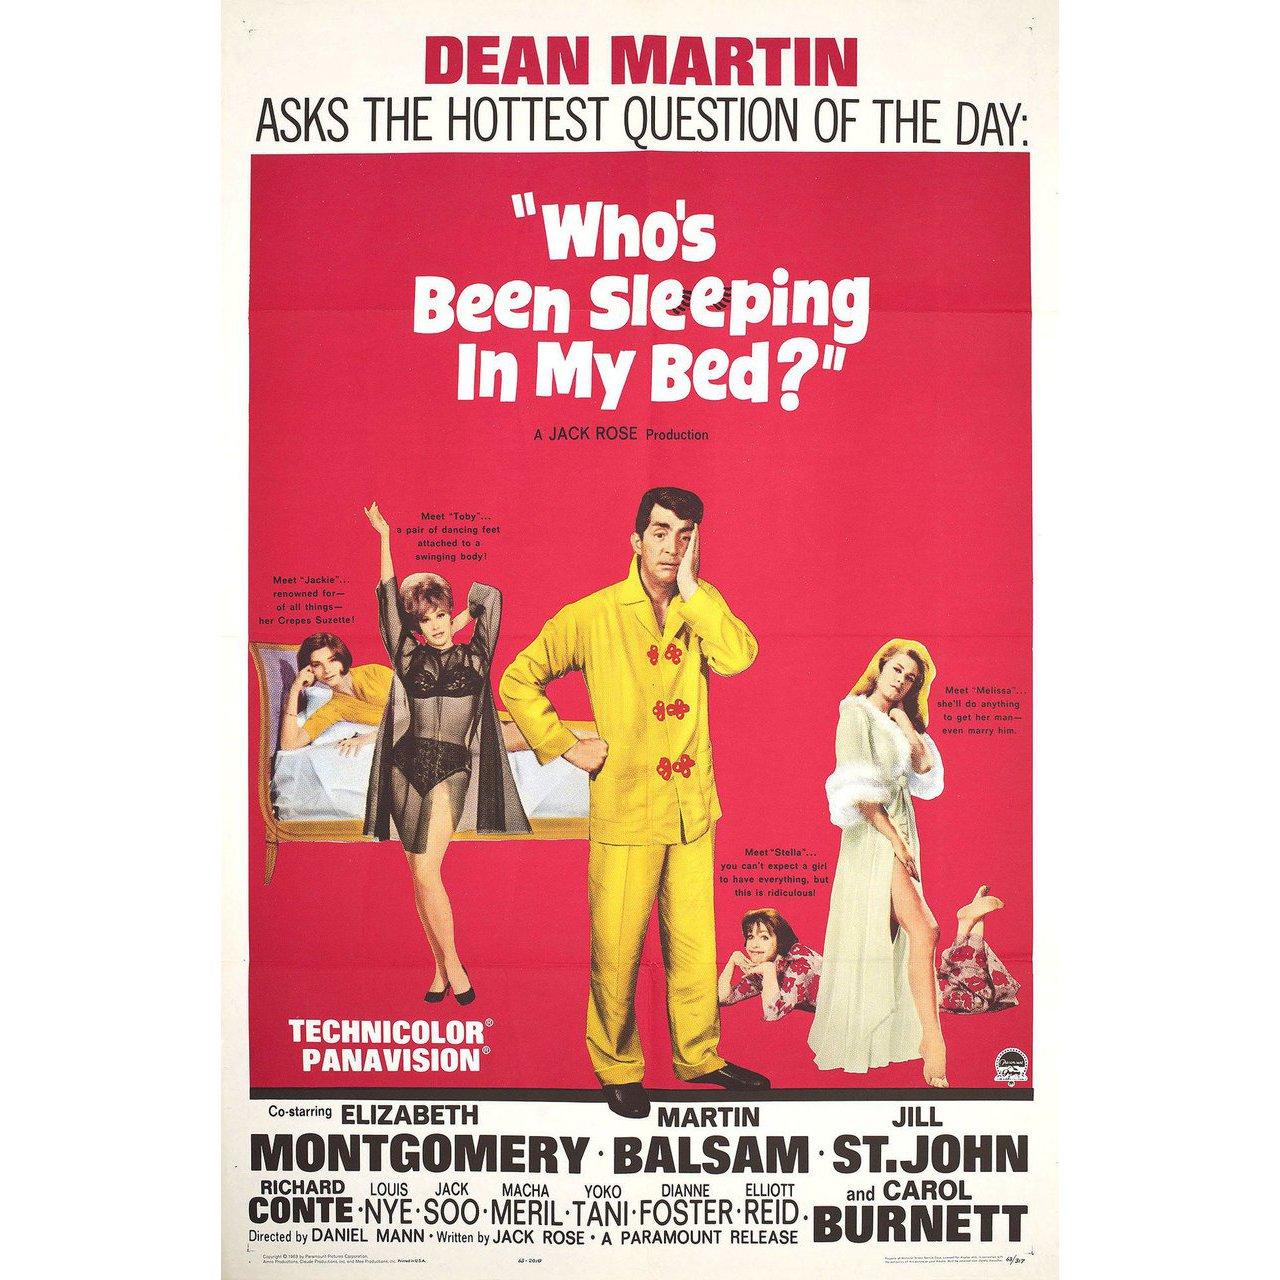 Affiche américaine originale de 1963 pour le film Who's Been Sleeping in My Bed ? réalisé par Daniel Mann avec Dean Martin / Elizabeth Montgomery / Martin Balsam / Jill St. John. Bon état, plié. De nombreuses affiches originales ont été publiées